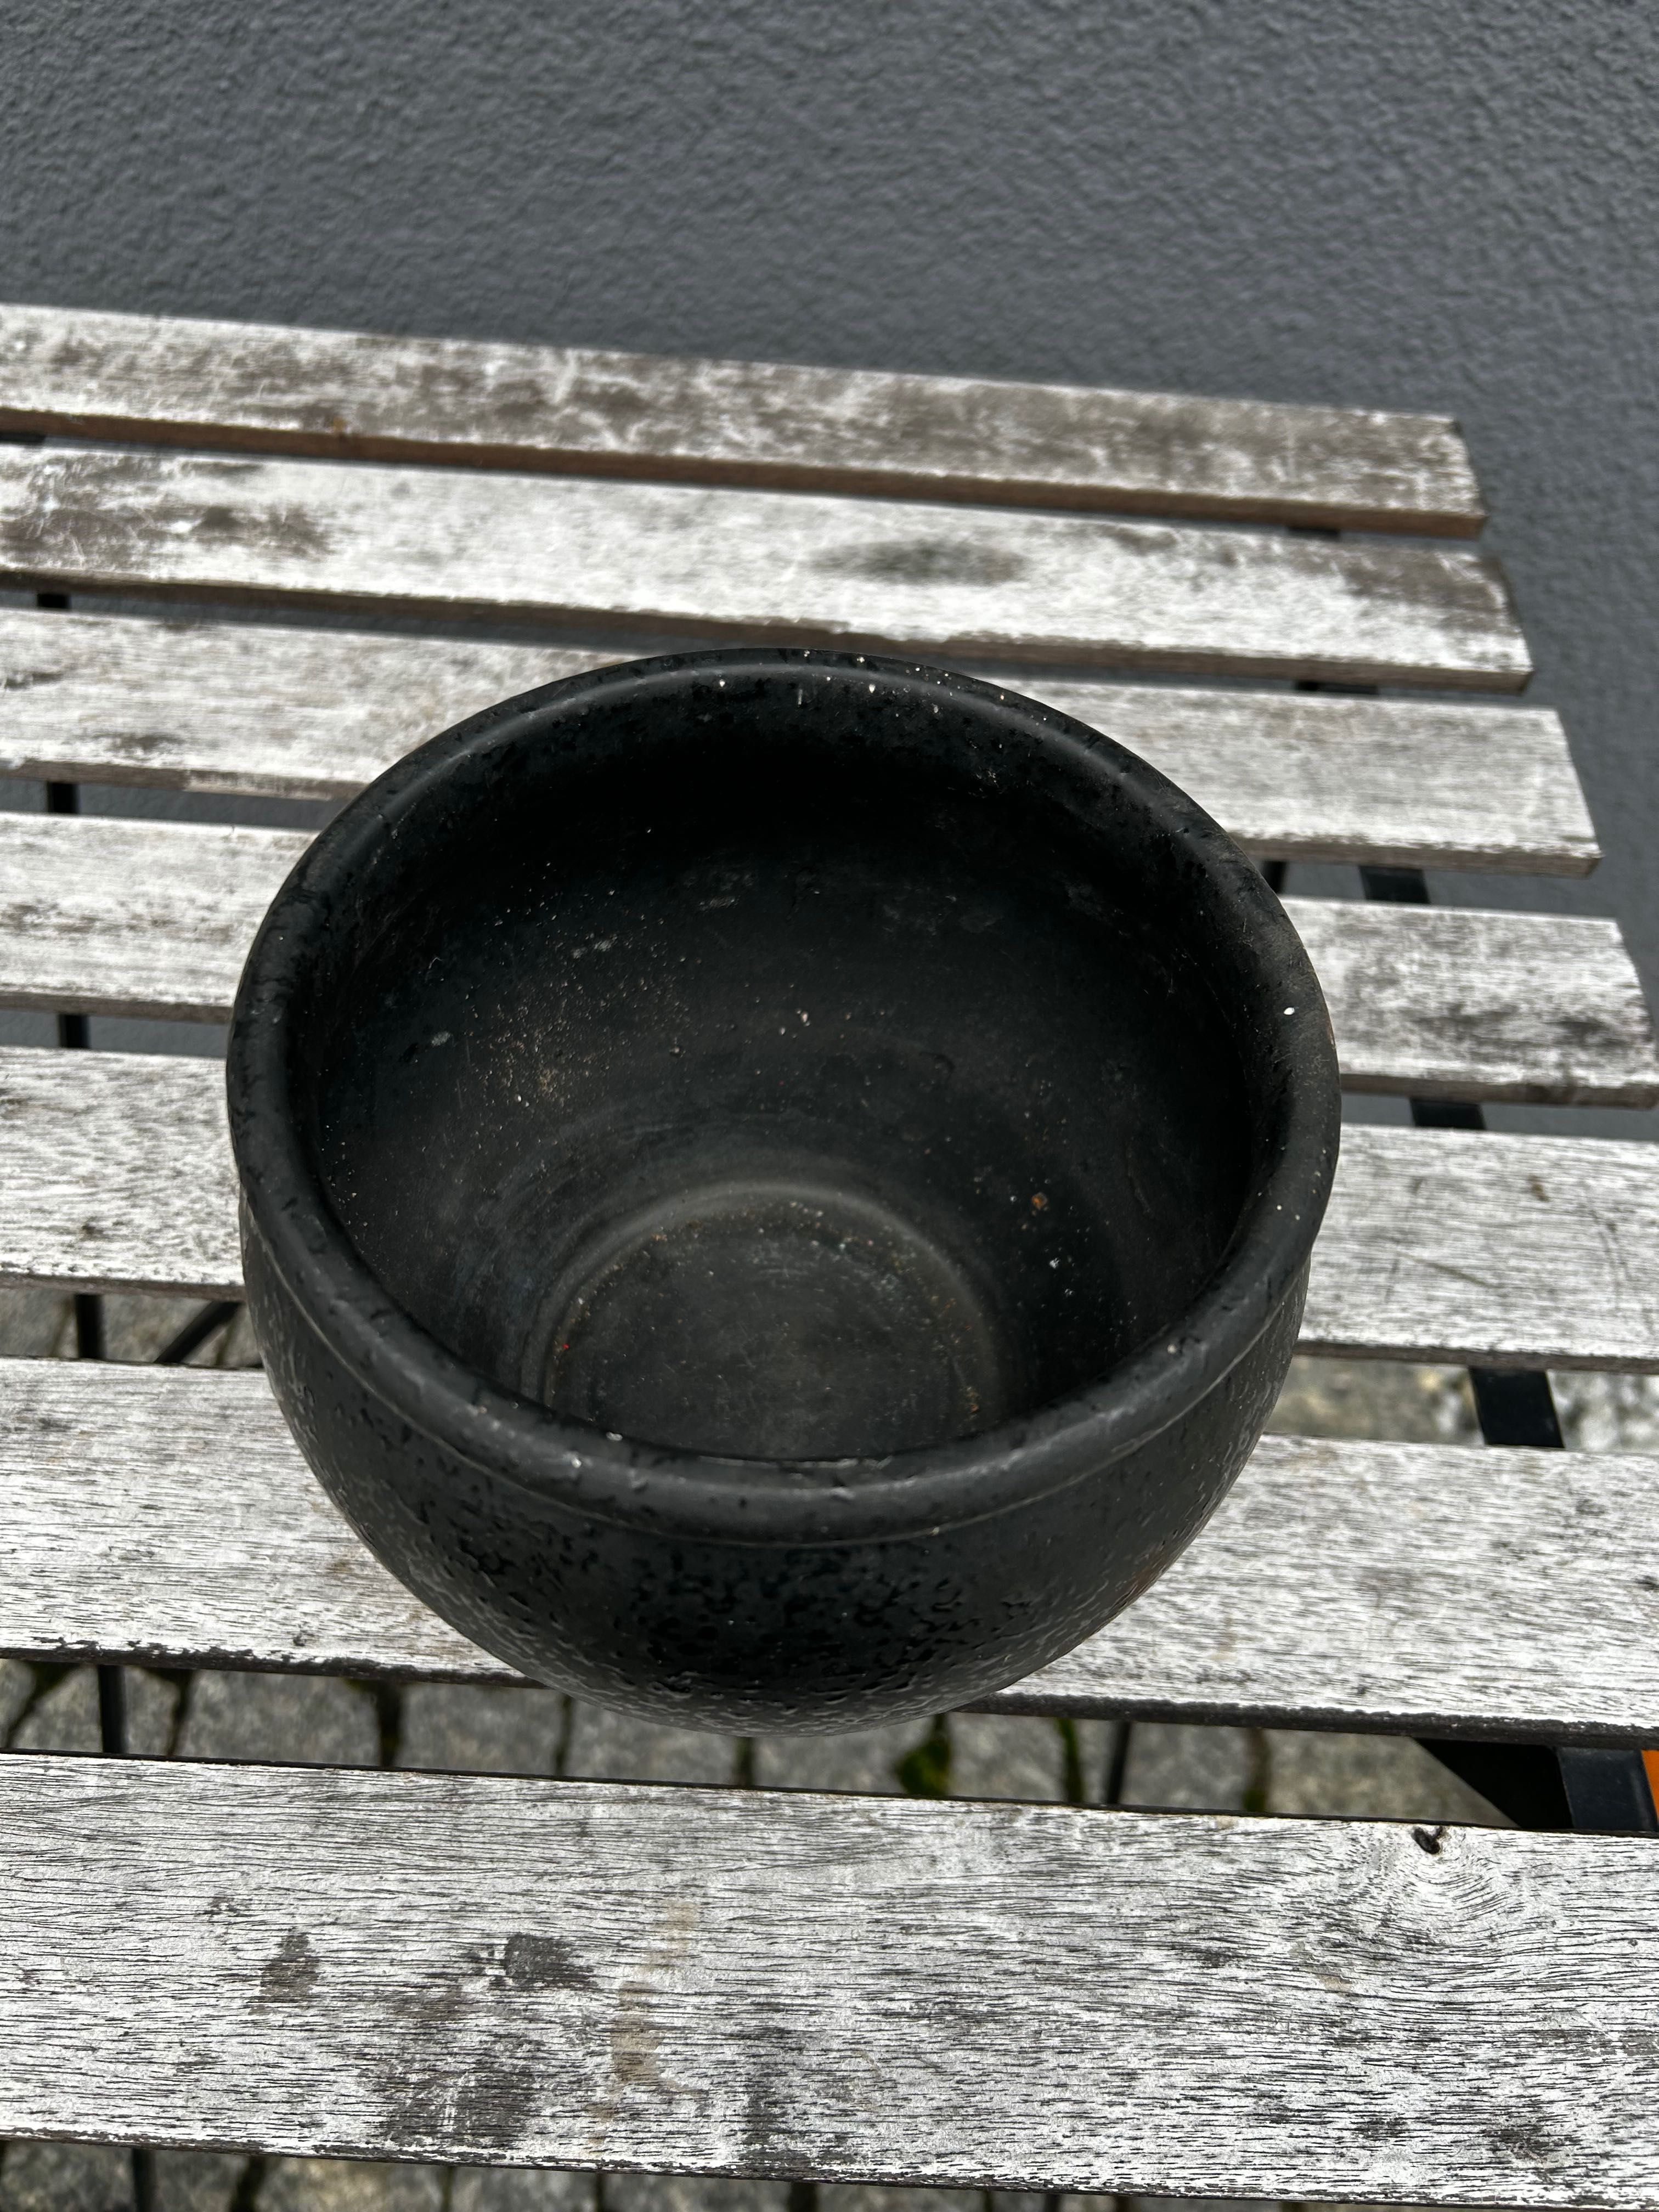 Czarna ceramiczna osłonka na doniczkę